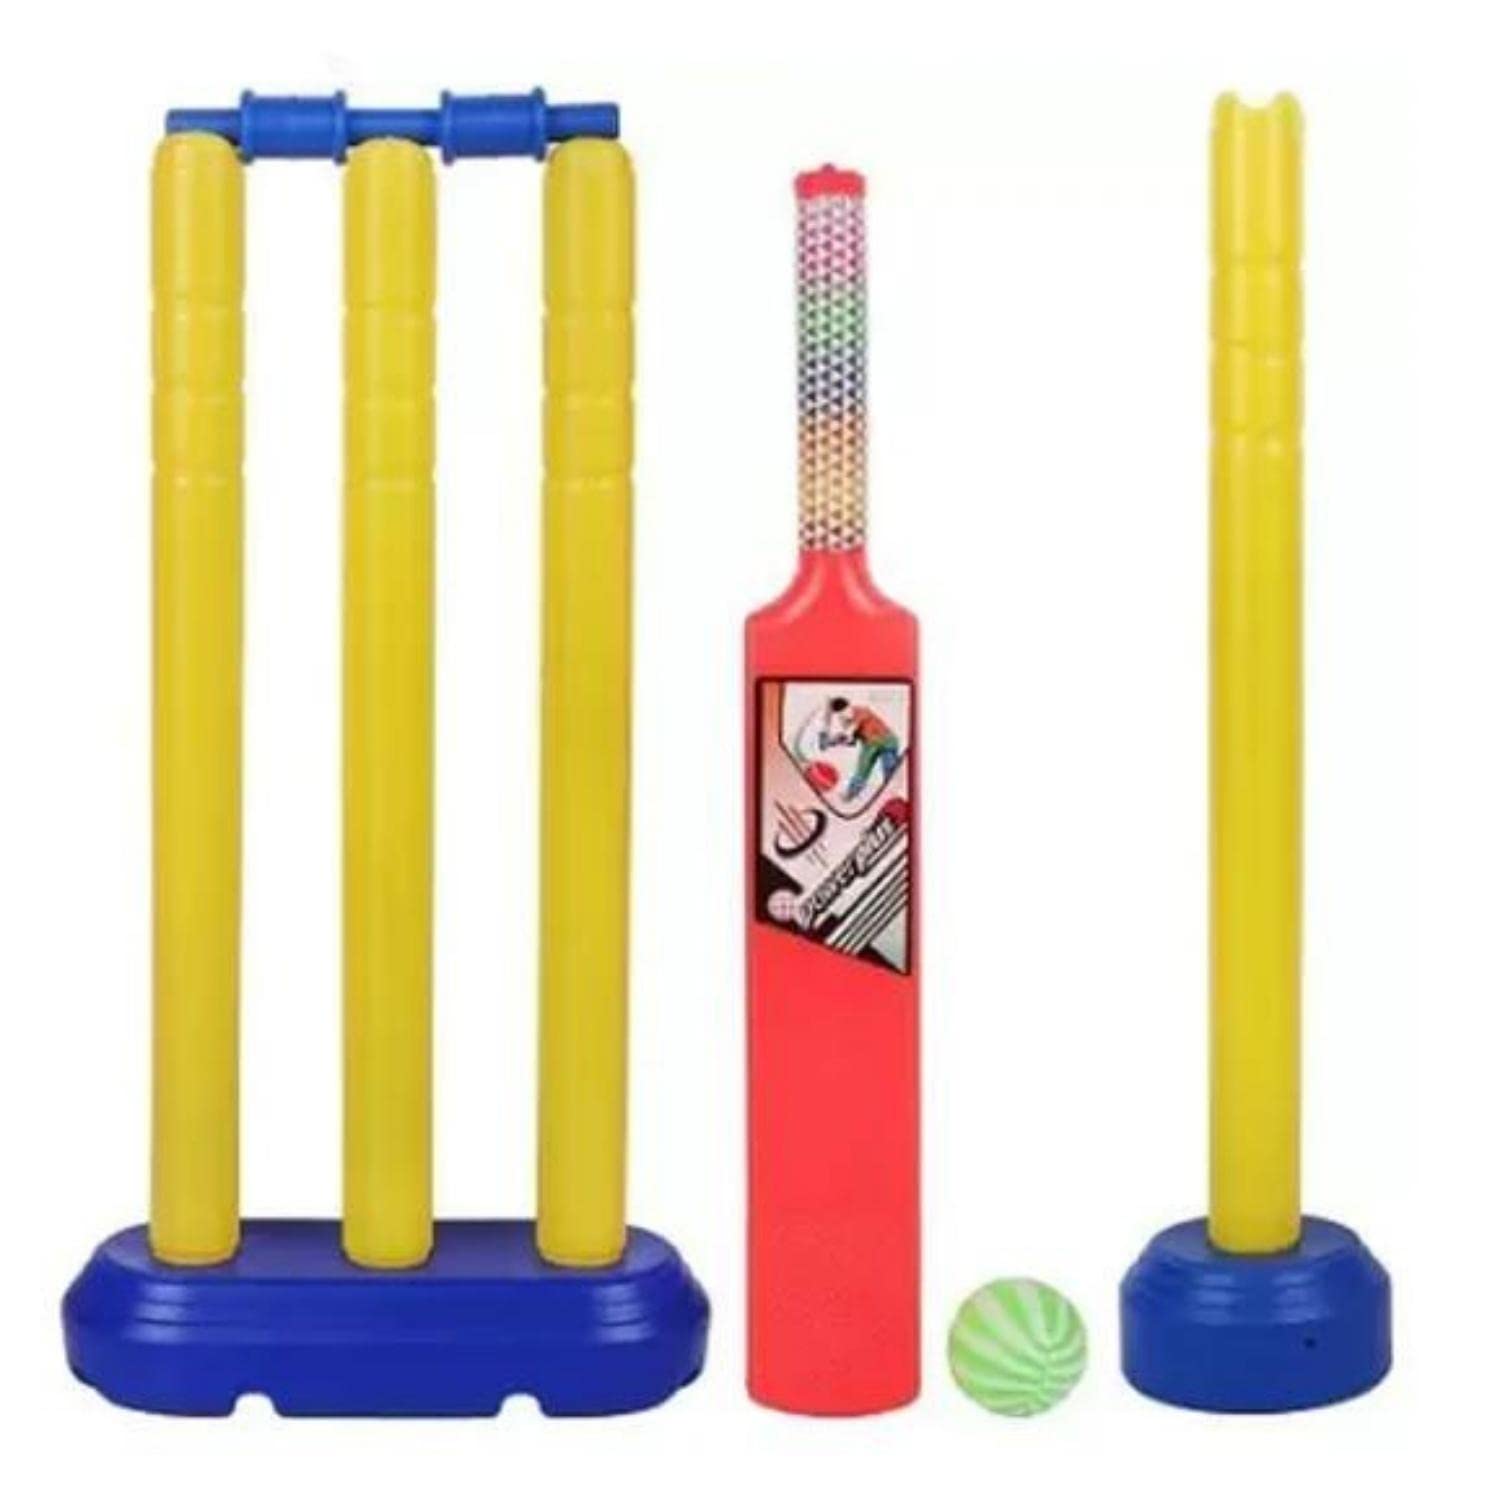 Plastic Bat and Ball Cricket Set